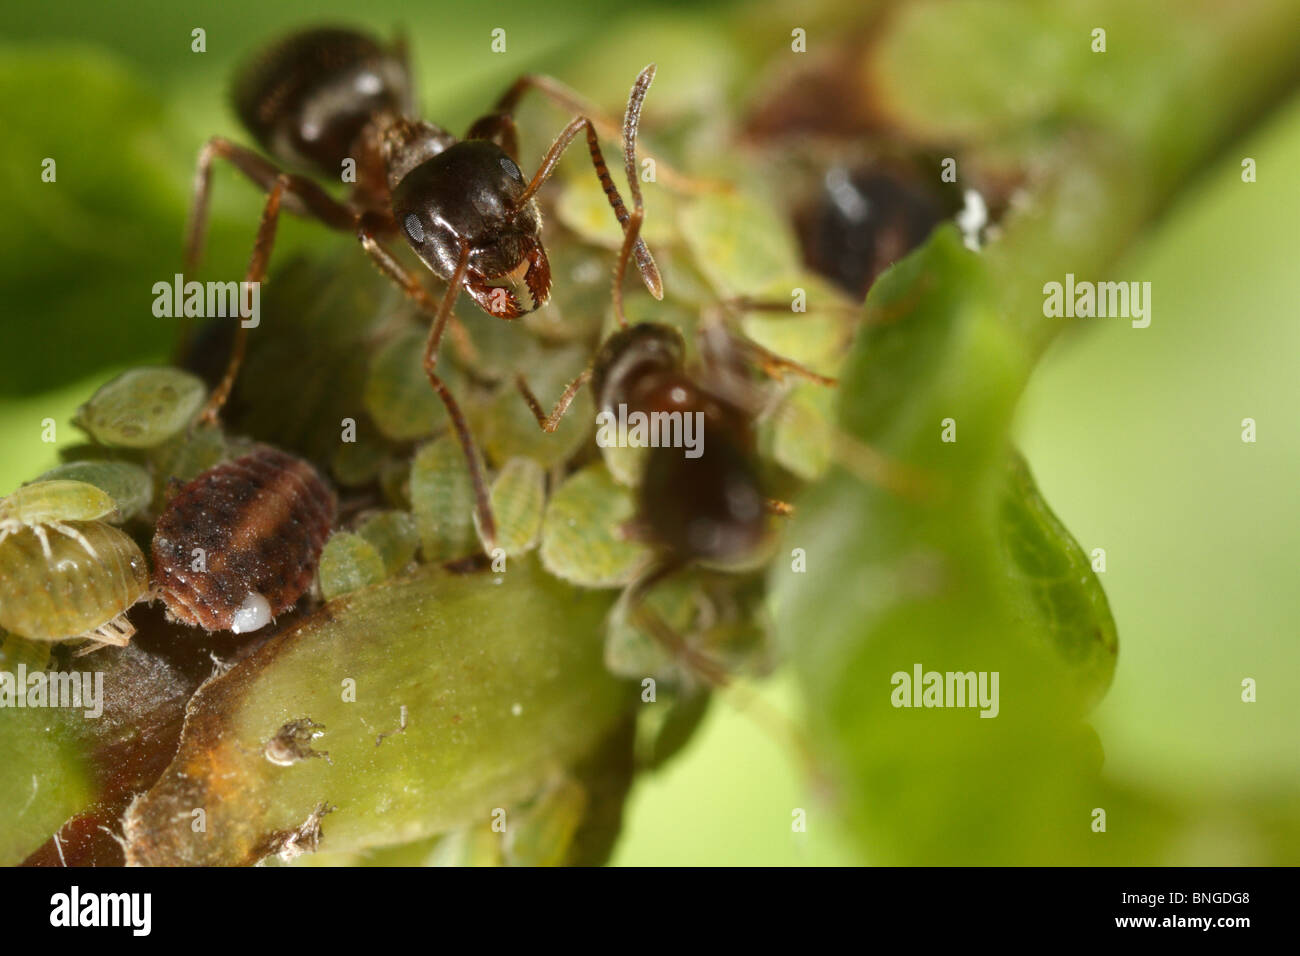 Lasius niger, la hormiga negra de jardín, viendo a los áfidos y ordeño Honey Dew Foto de stock